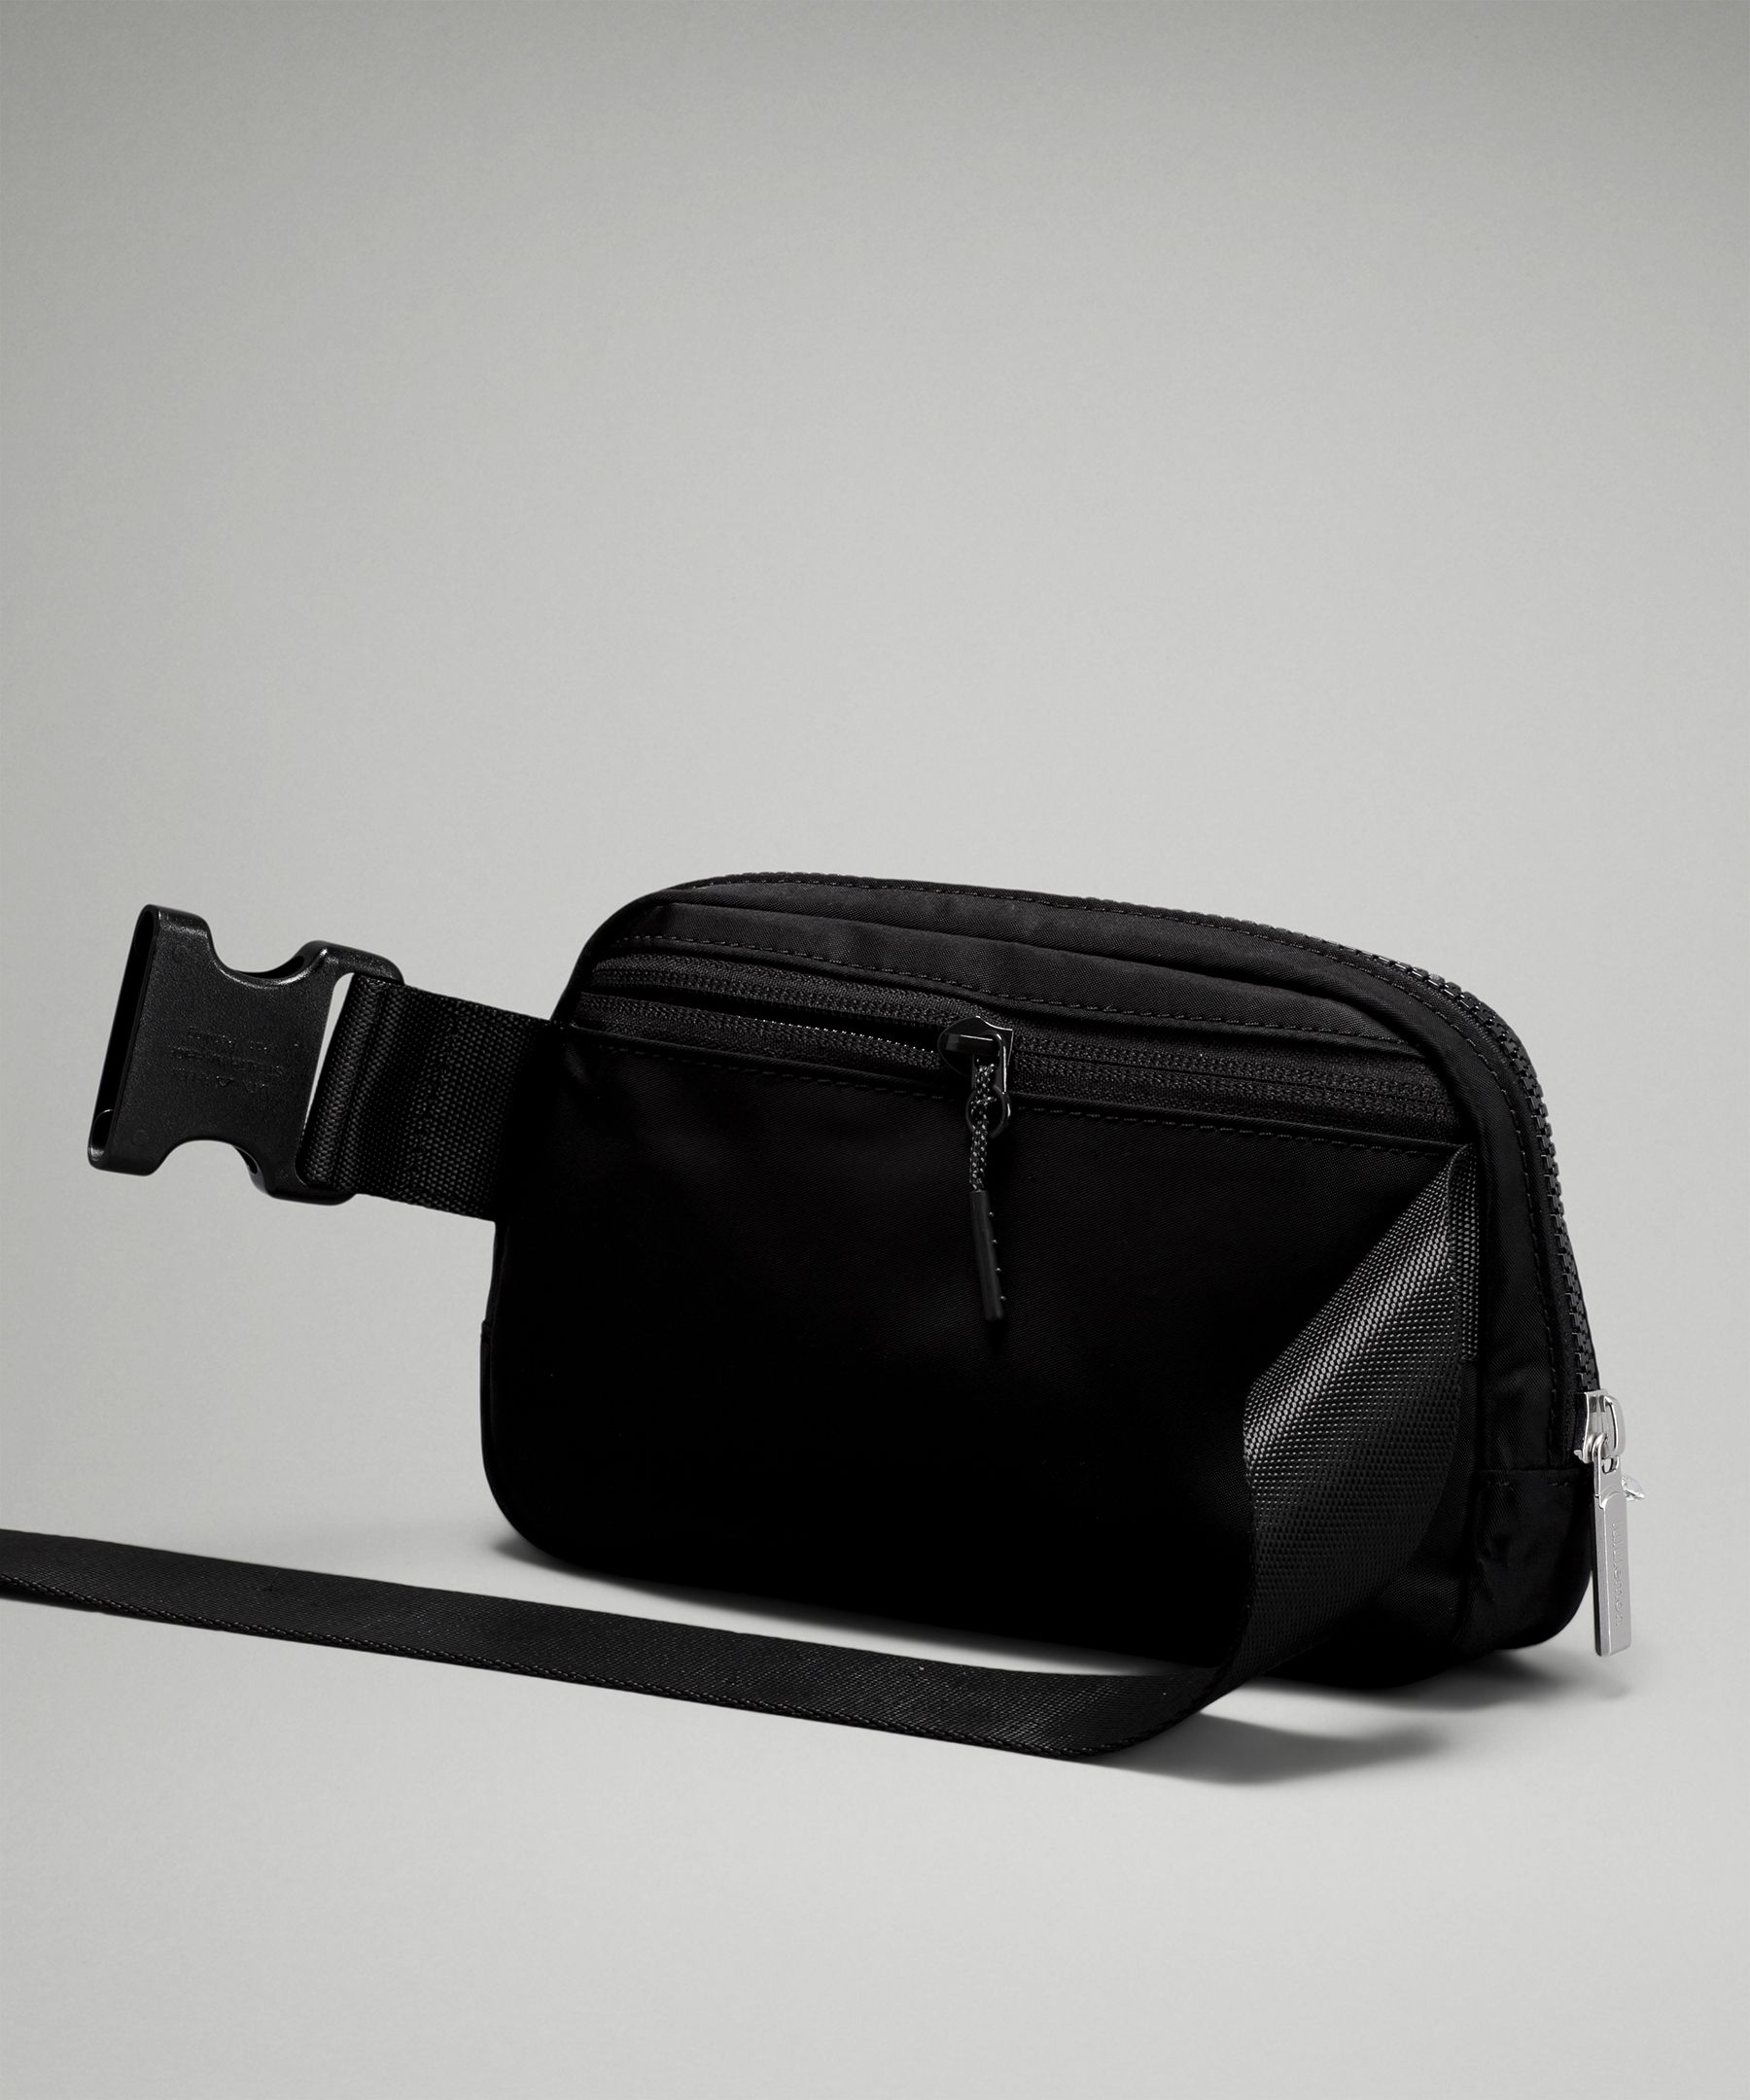 Lululemon Everywhere Belt Bag Crossbody Bag Black in Waterproof